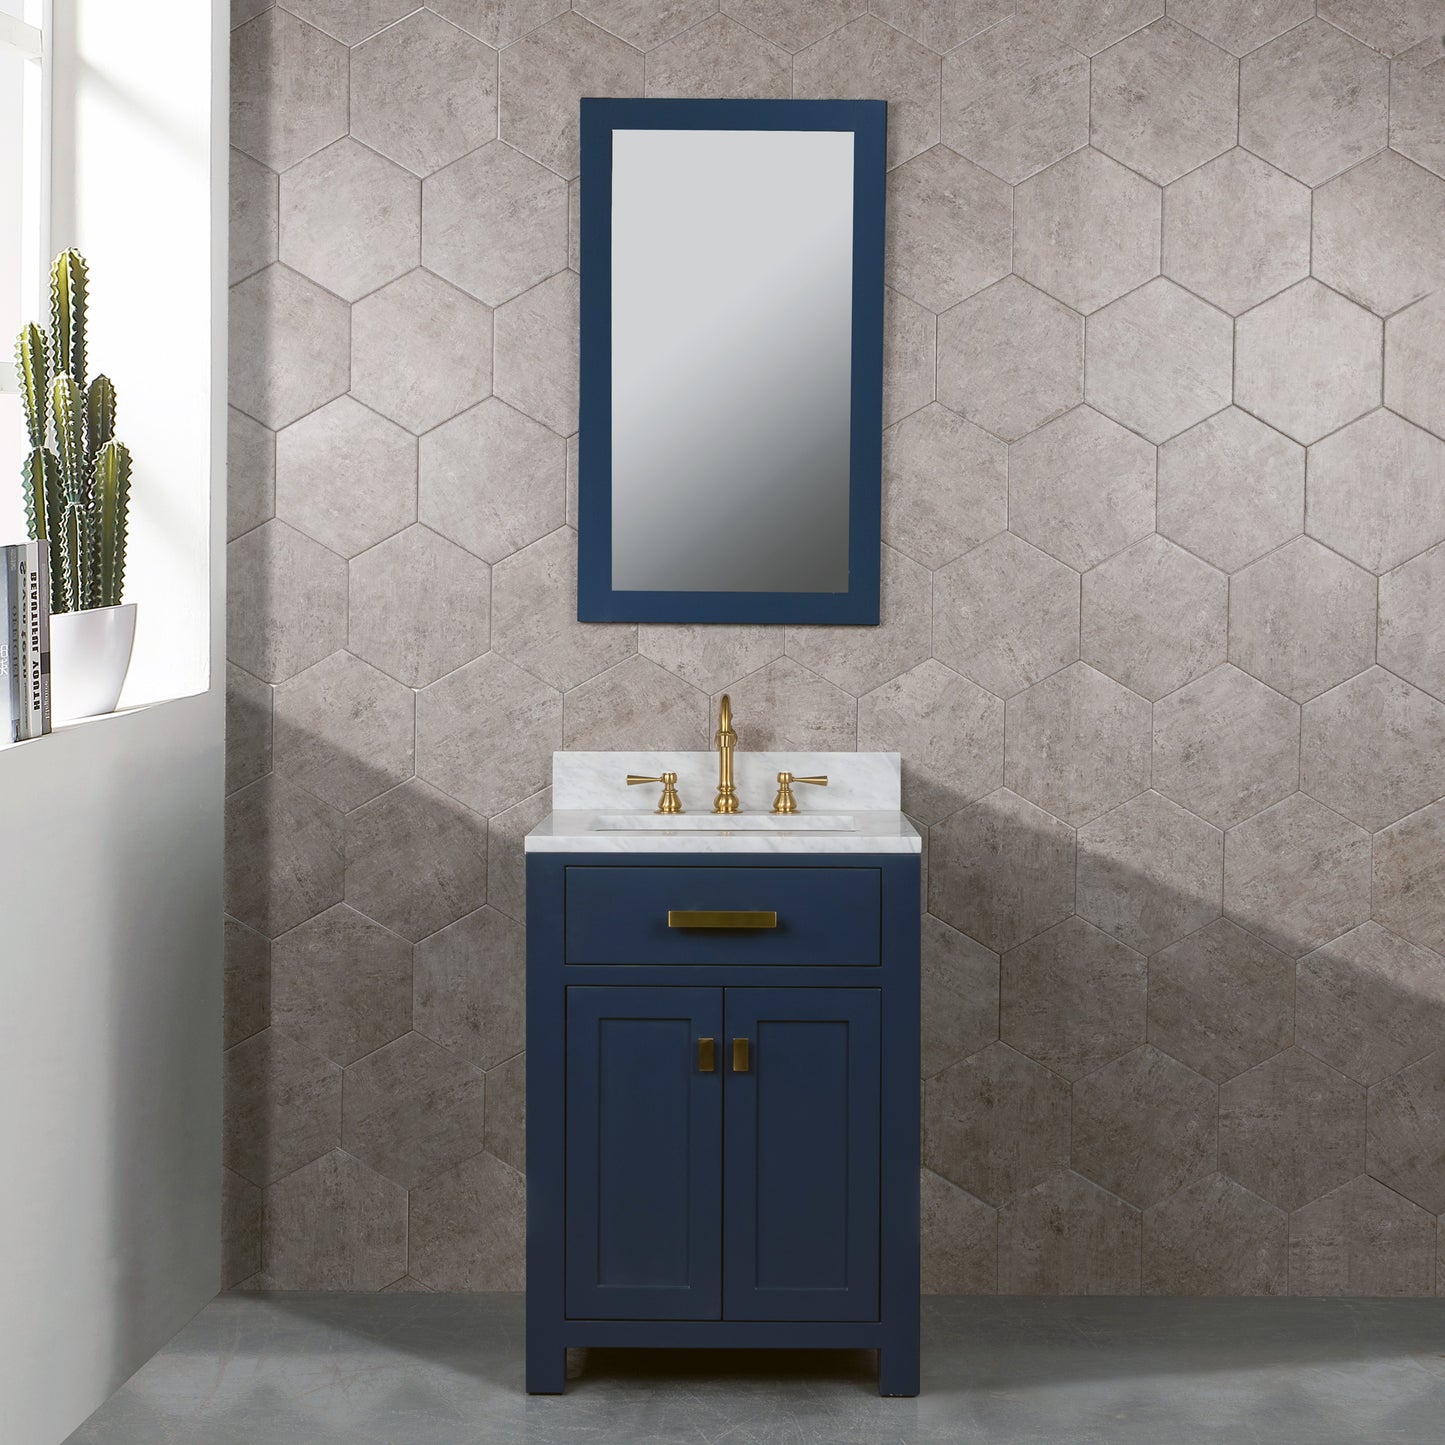 Water Creation VIOLA 24" Inch Single Sink Carrara White Marble Vanity In Monarch Blue - Luxe Bathroom Vanities